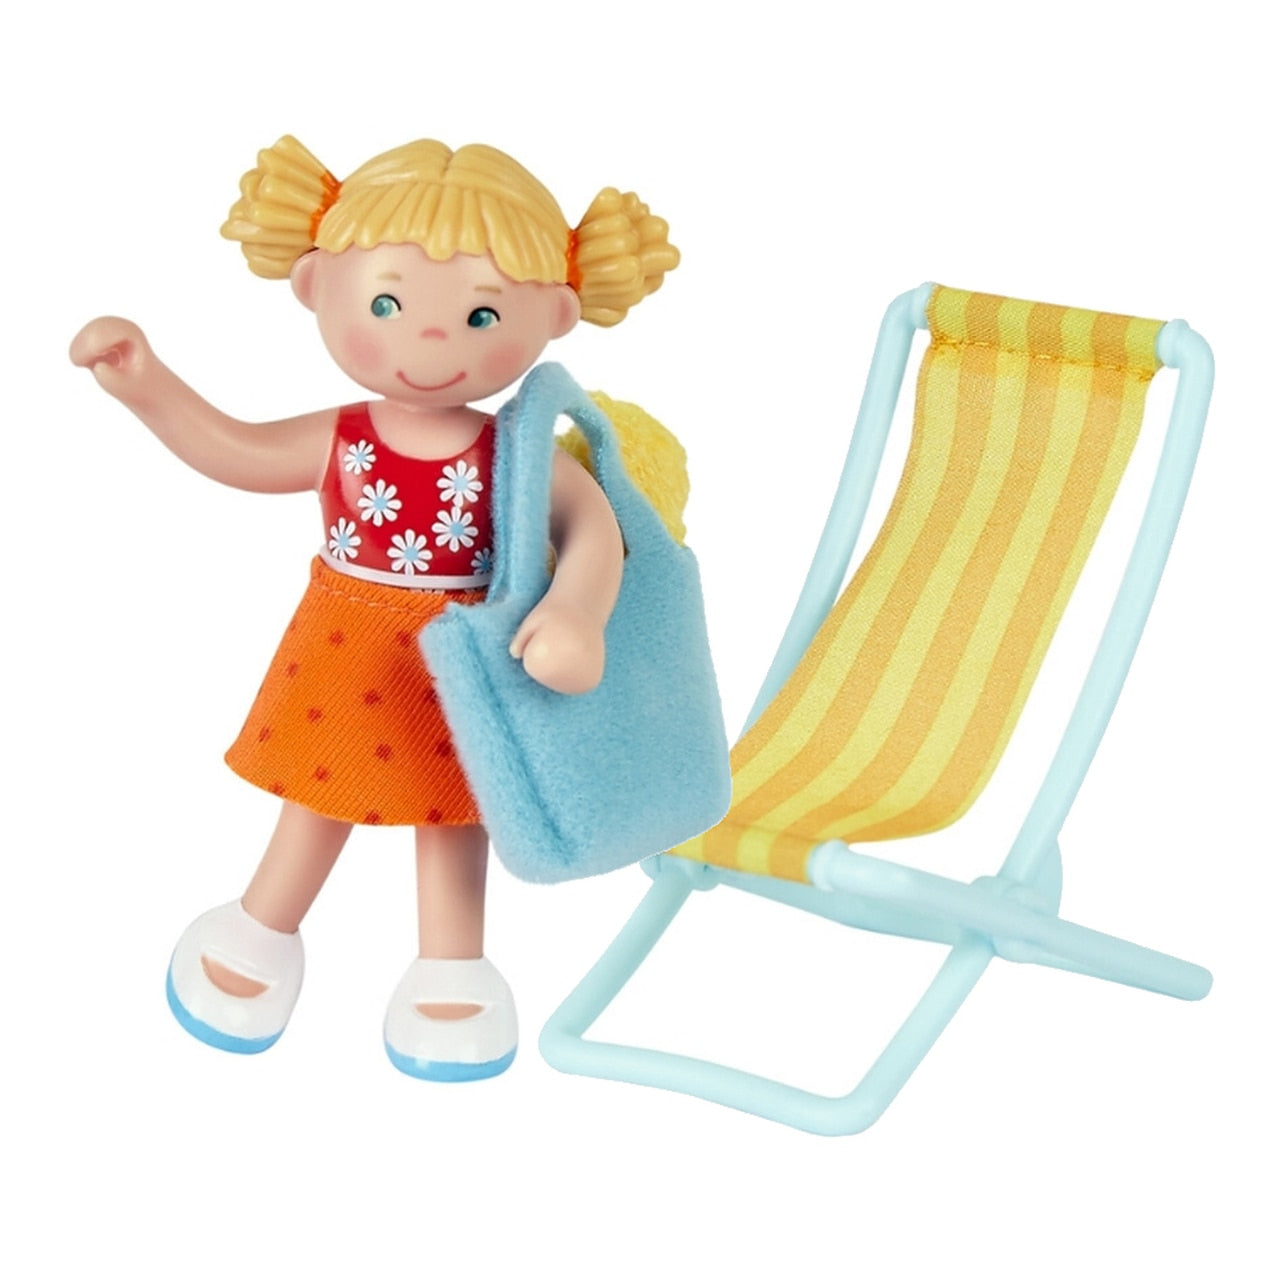 Little Friends: Tina the Beachgoer